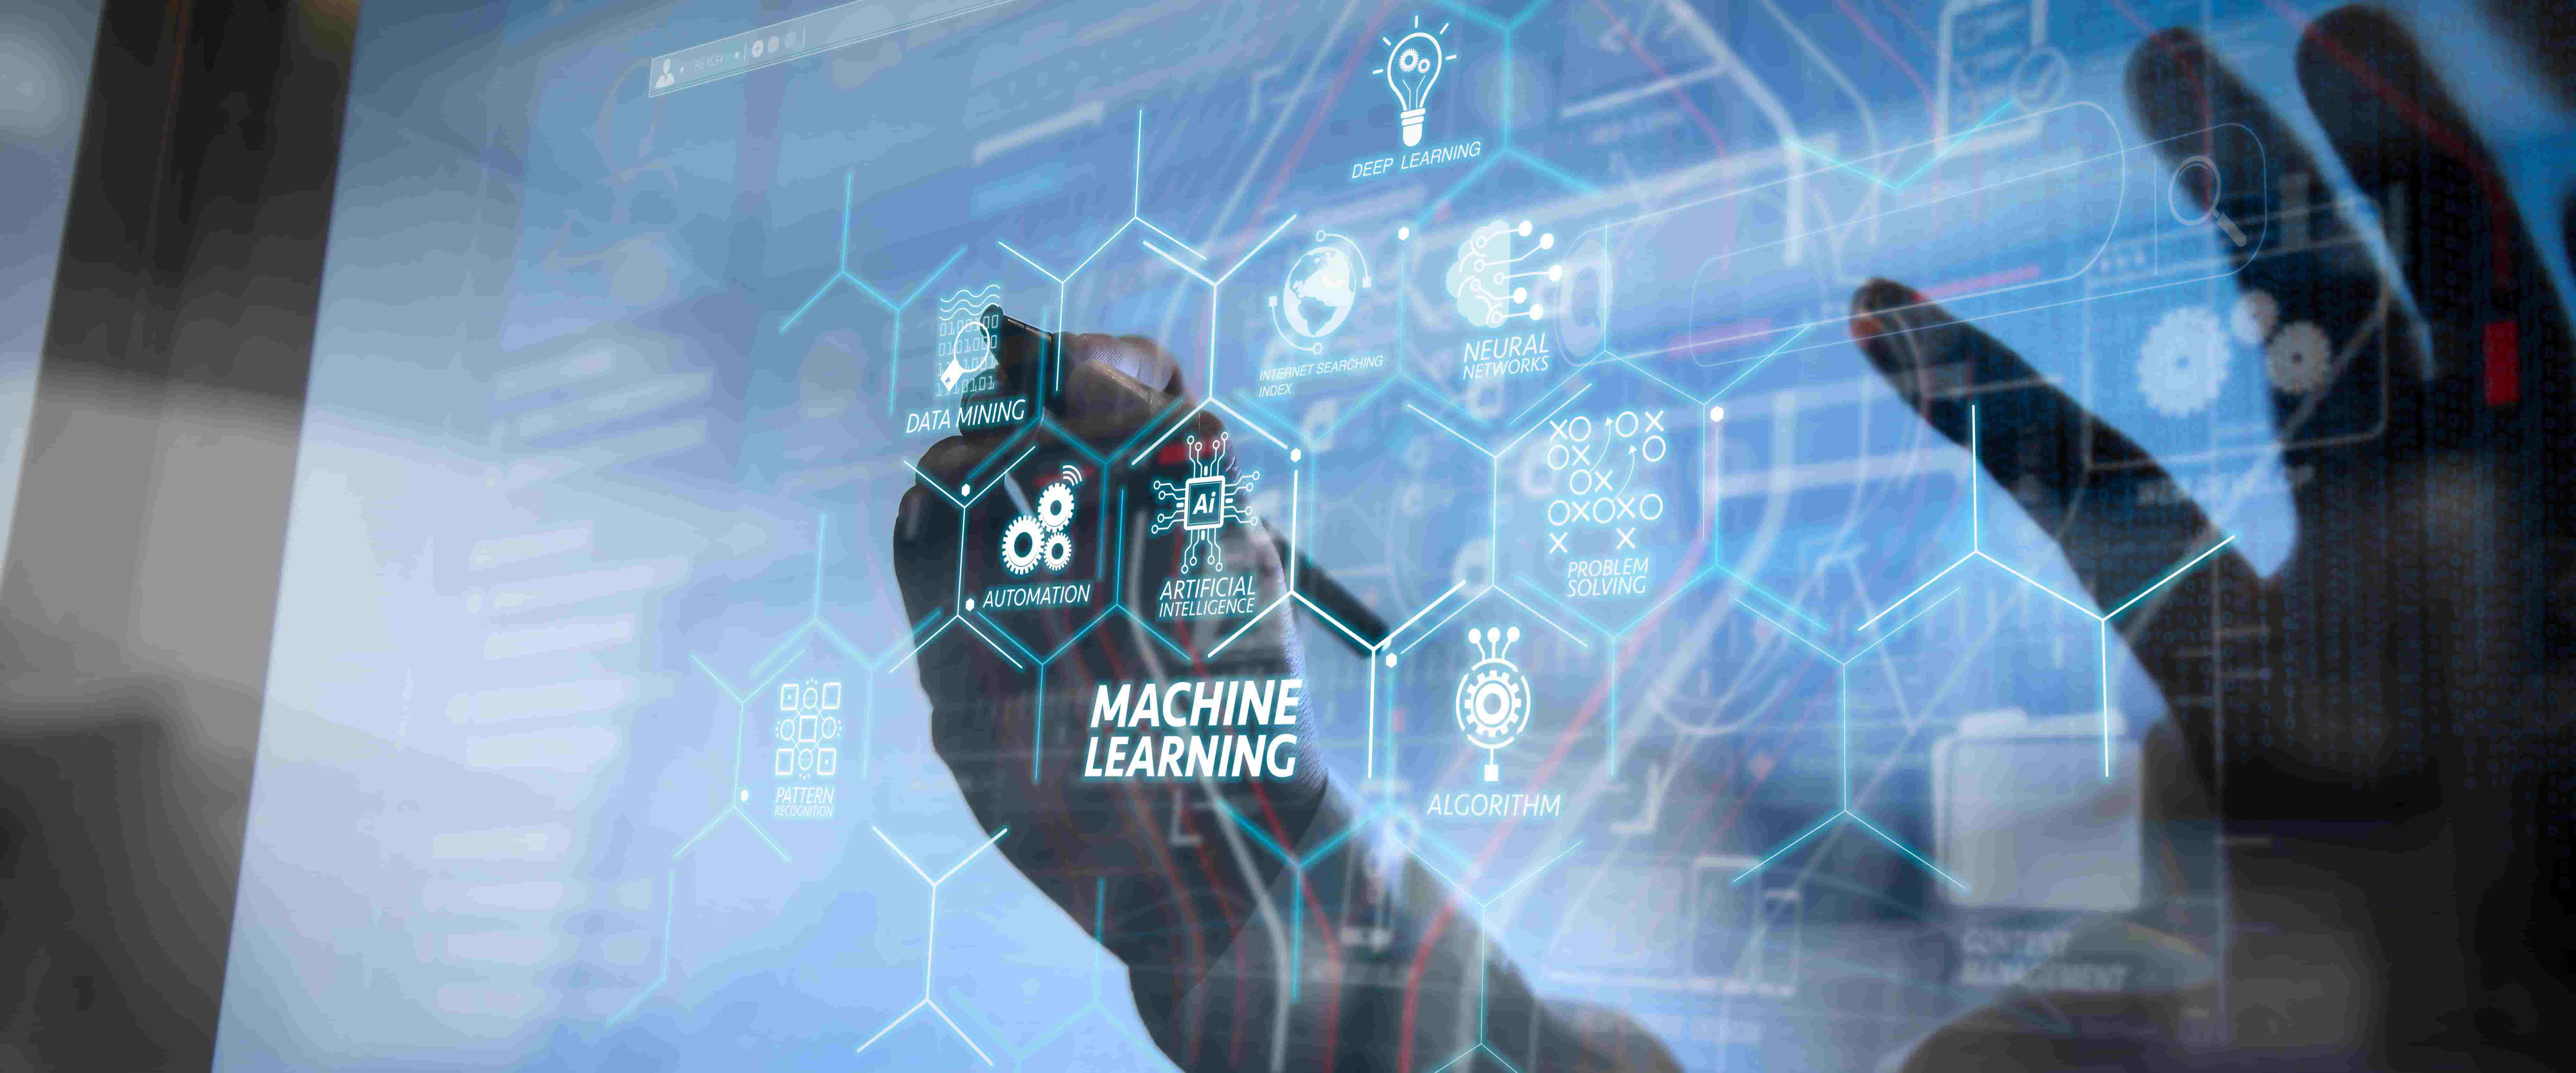 图片展示了一位使用触摸屏的人，屏幕上显示着与机器学习相关的各种技术术语和图标。